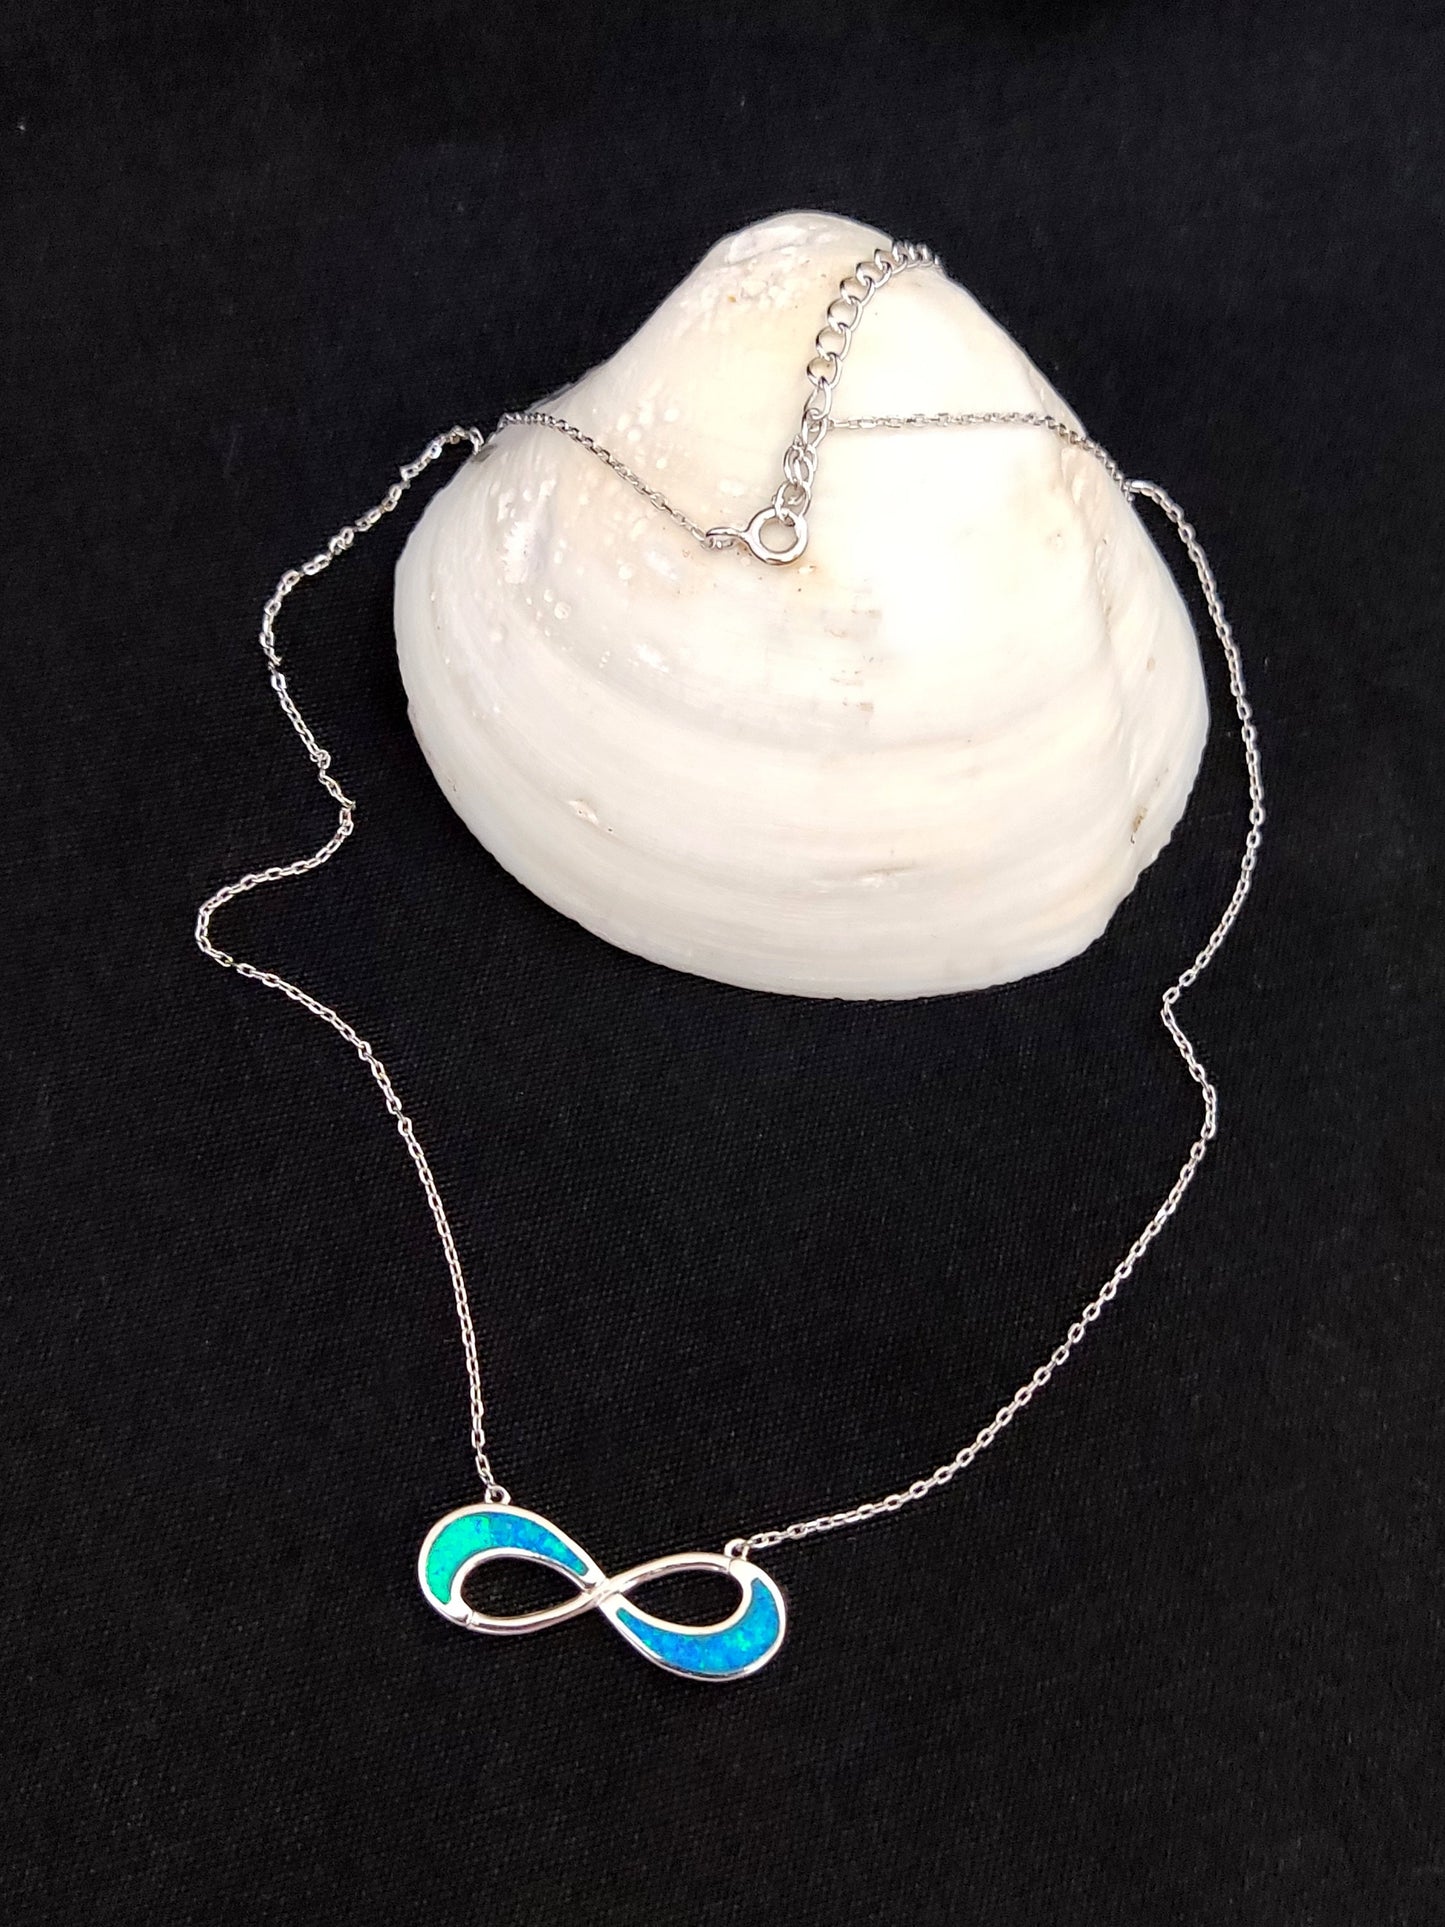 Sterling Silber 925 Feuer Regenbogen blauer Opal Infinity Symbol Kette Anhänger Halskette, Griechischer Opal Kette, Bijoux Grecque, griechischer Schmuck